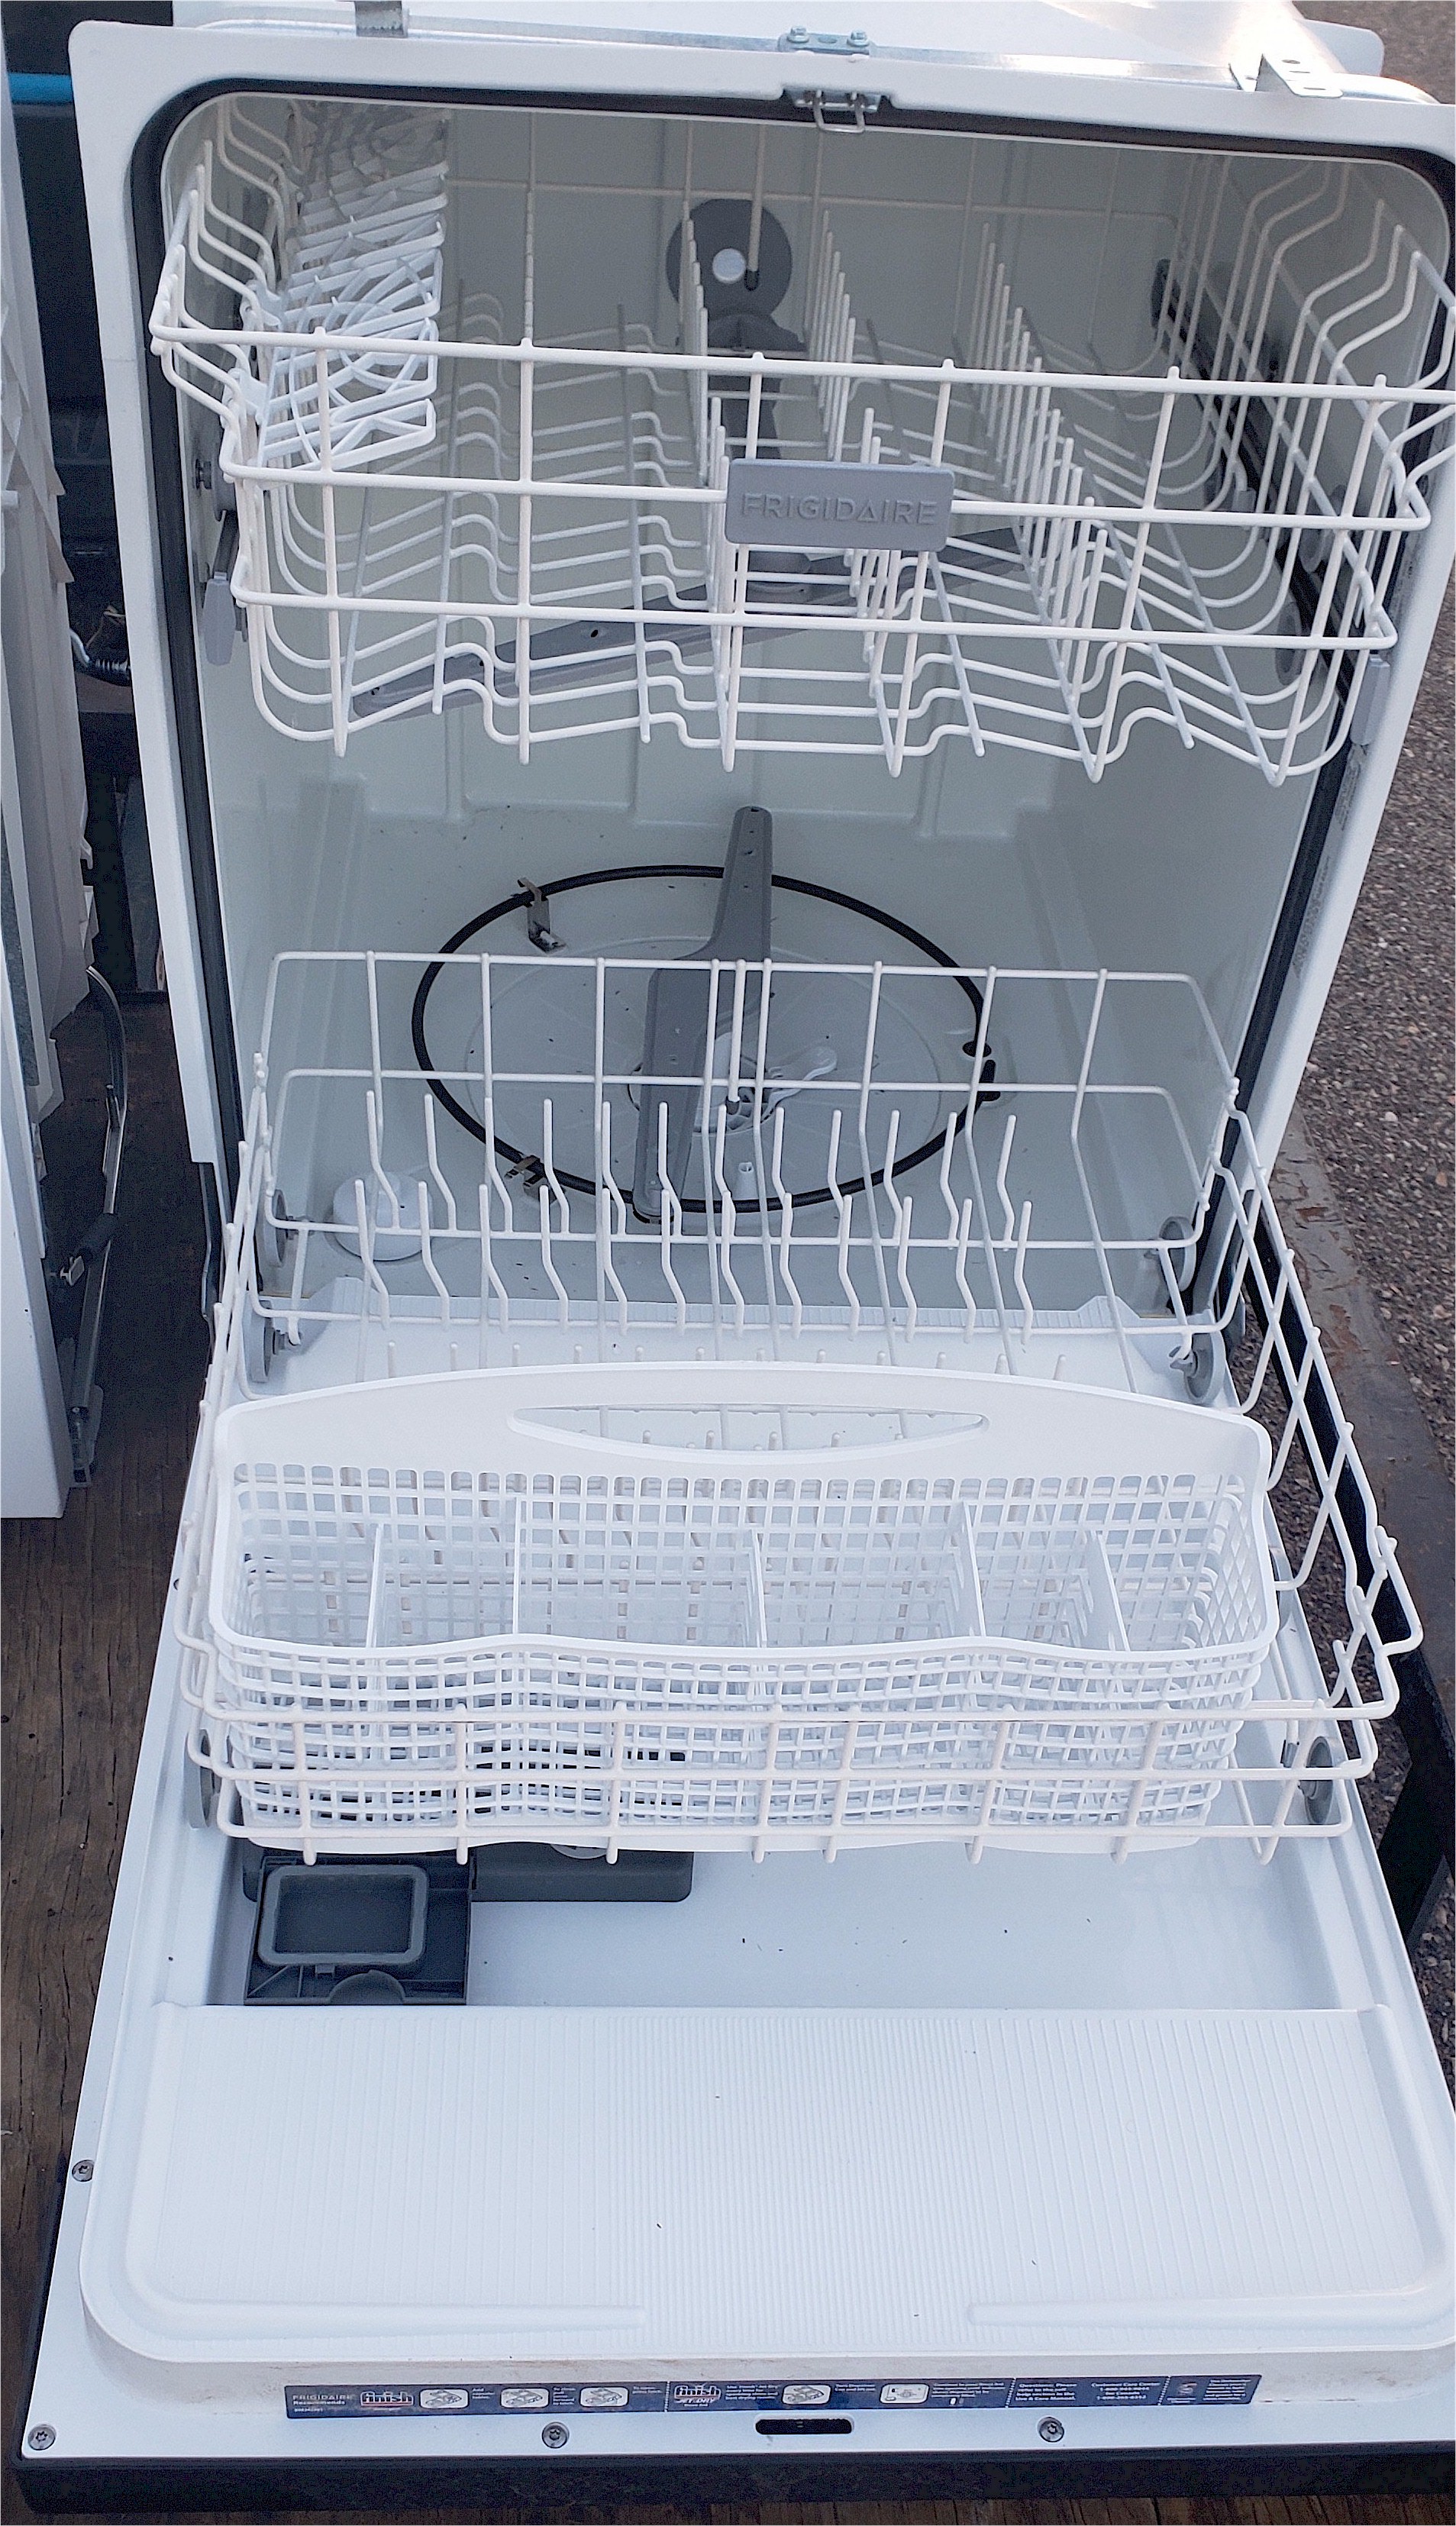 2 Black Frigidaire Dishwasher Inside